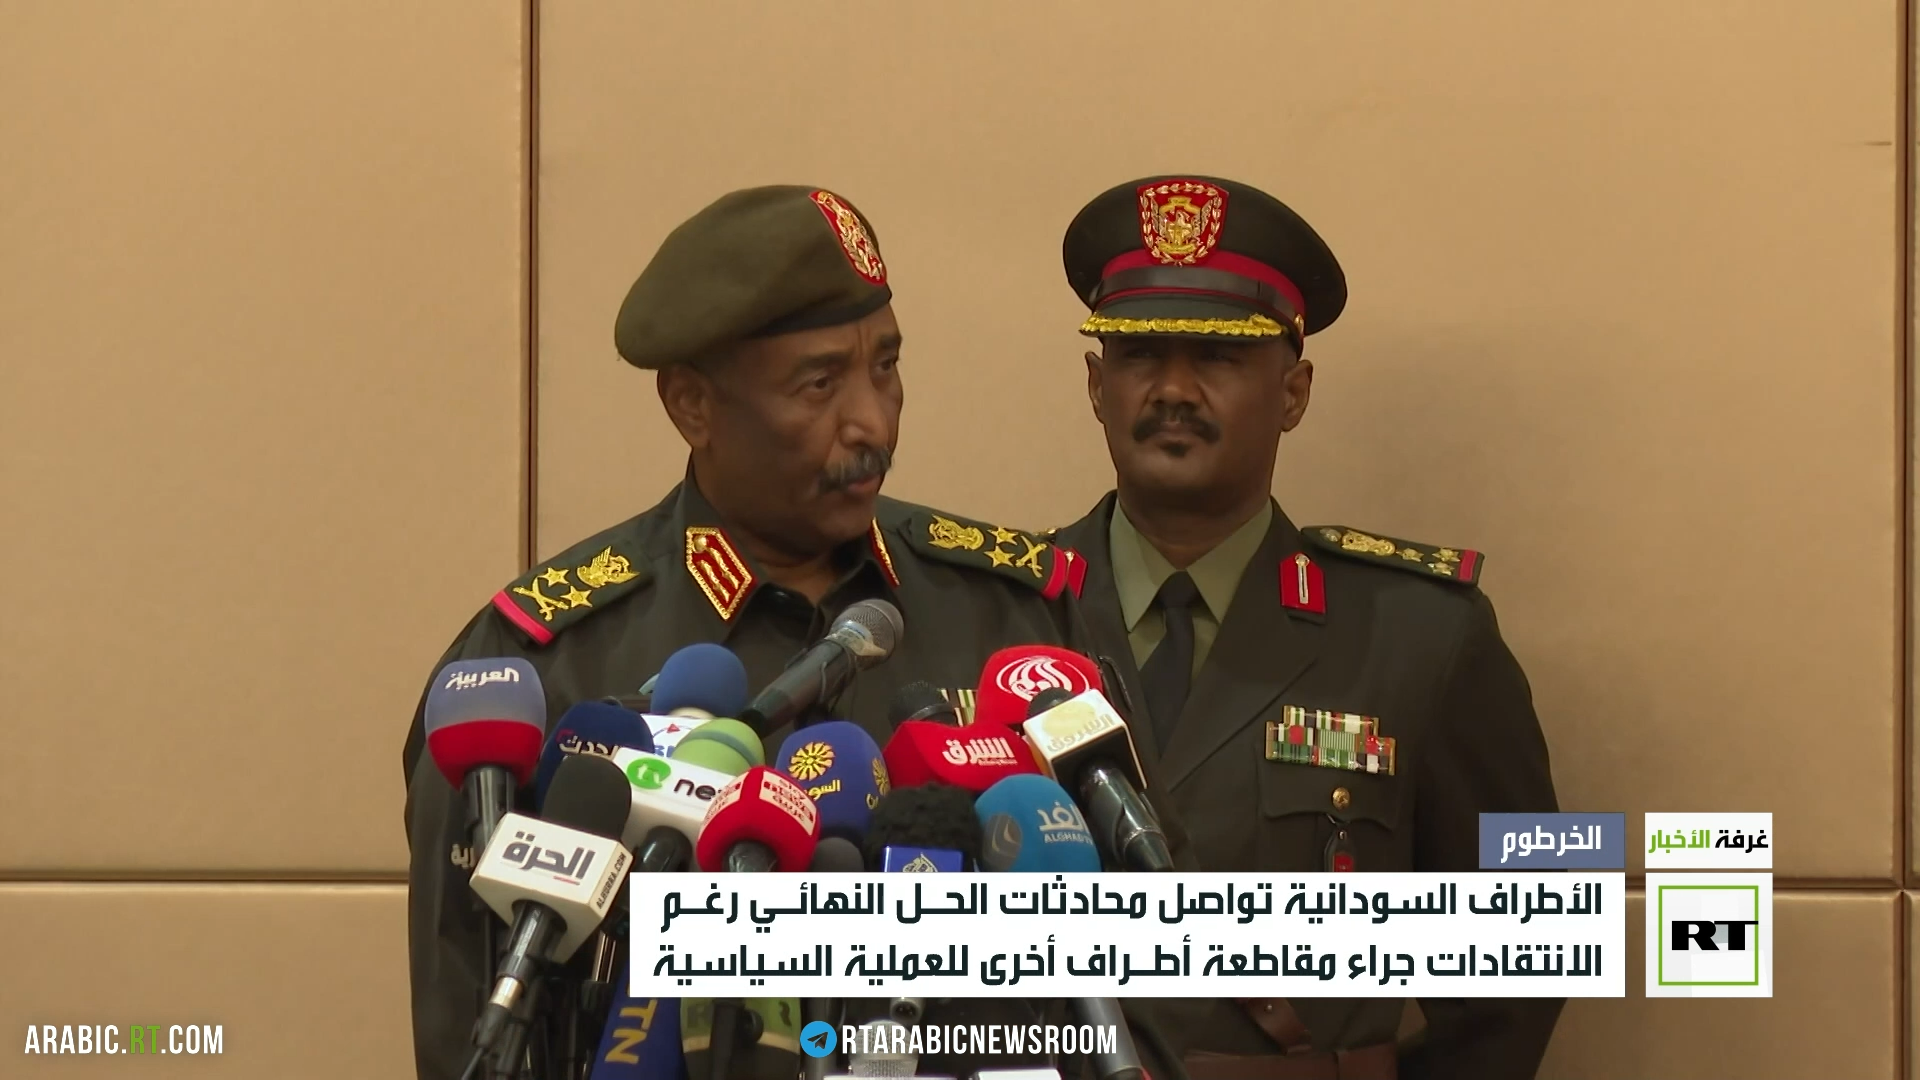 غوتيريش يرحب بإطلاق السودان المرحلة النهائية من الانتقال السياسي